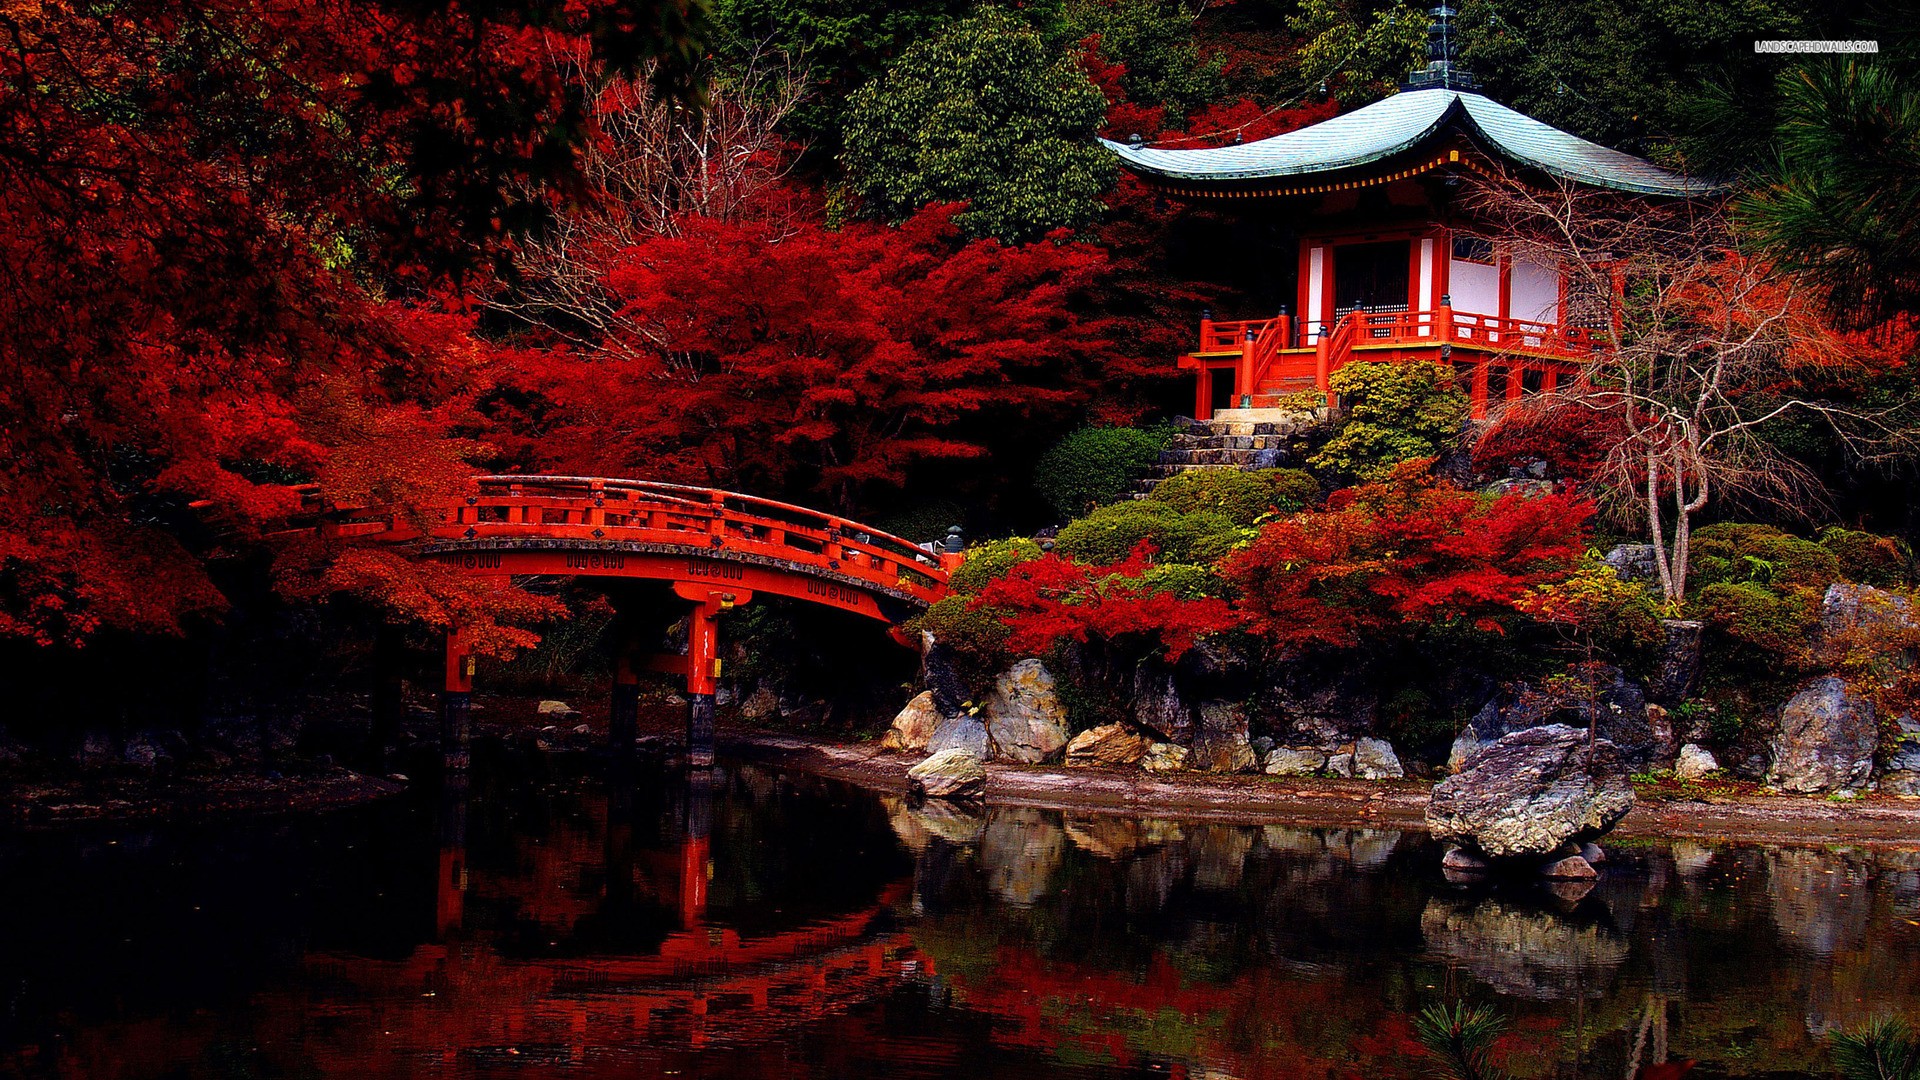 Temple Japan Pavilion Red Leaves Garden Bridge 1920x1080